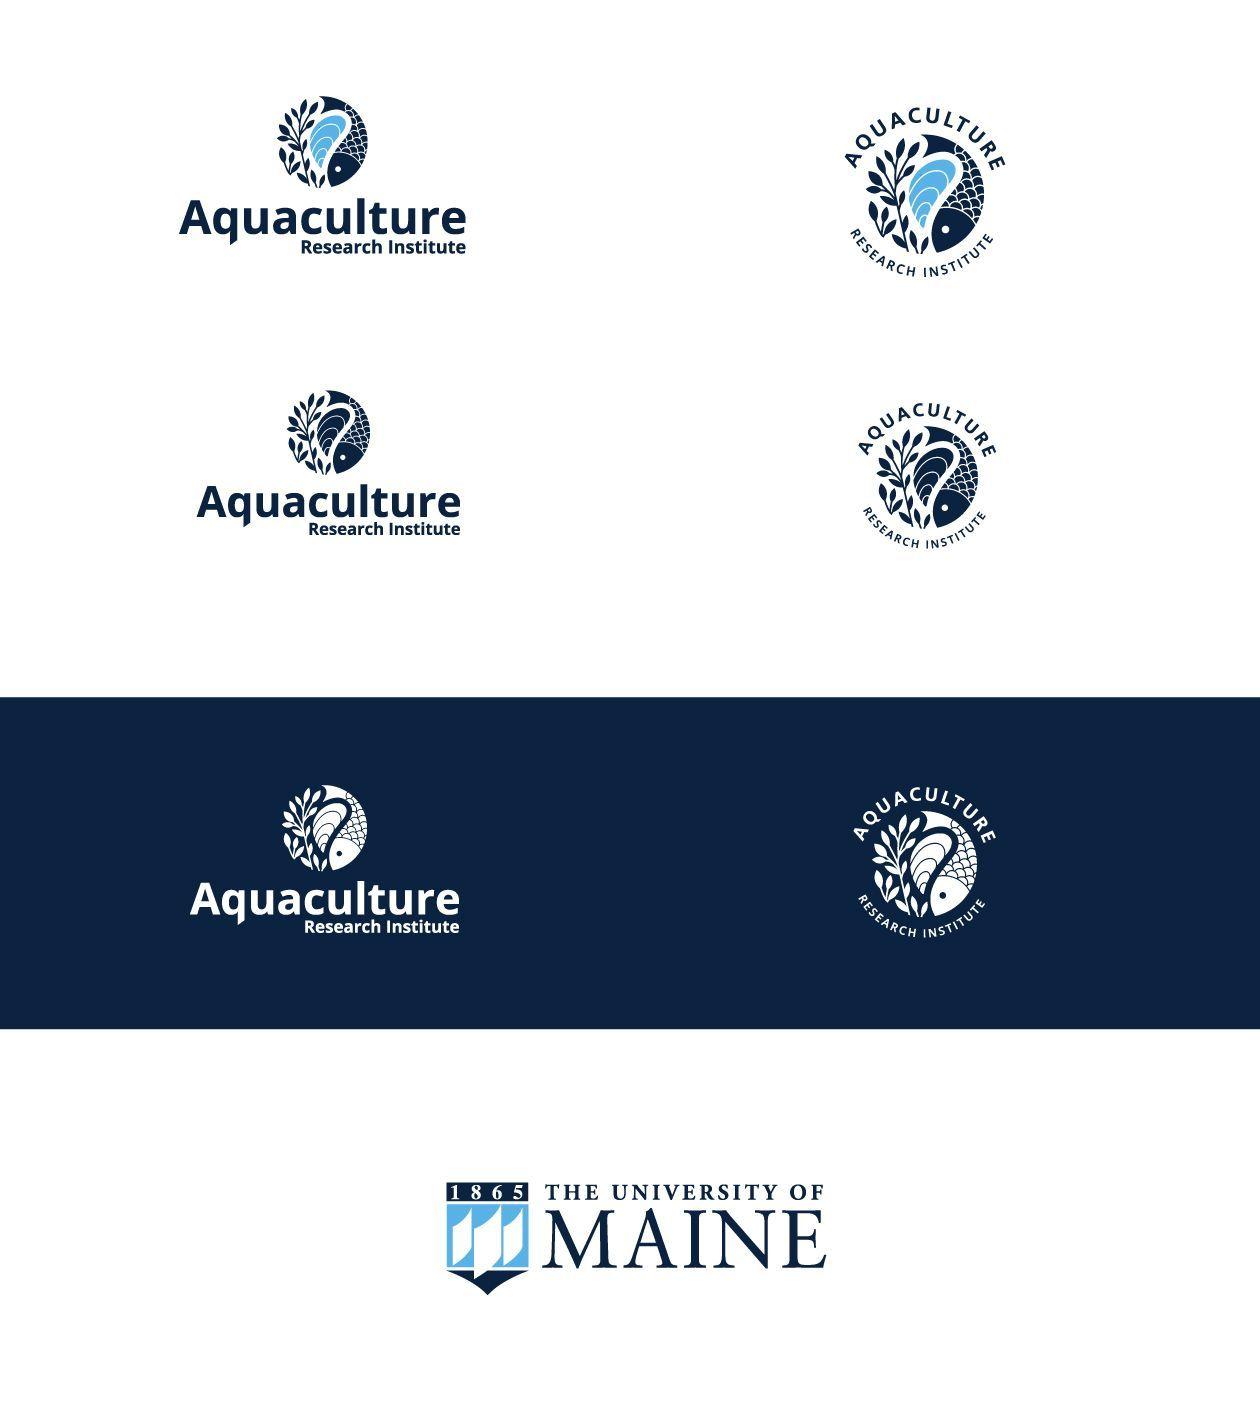 Ure Logo - Logos I Like. Fish logo, Logos, Research